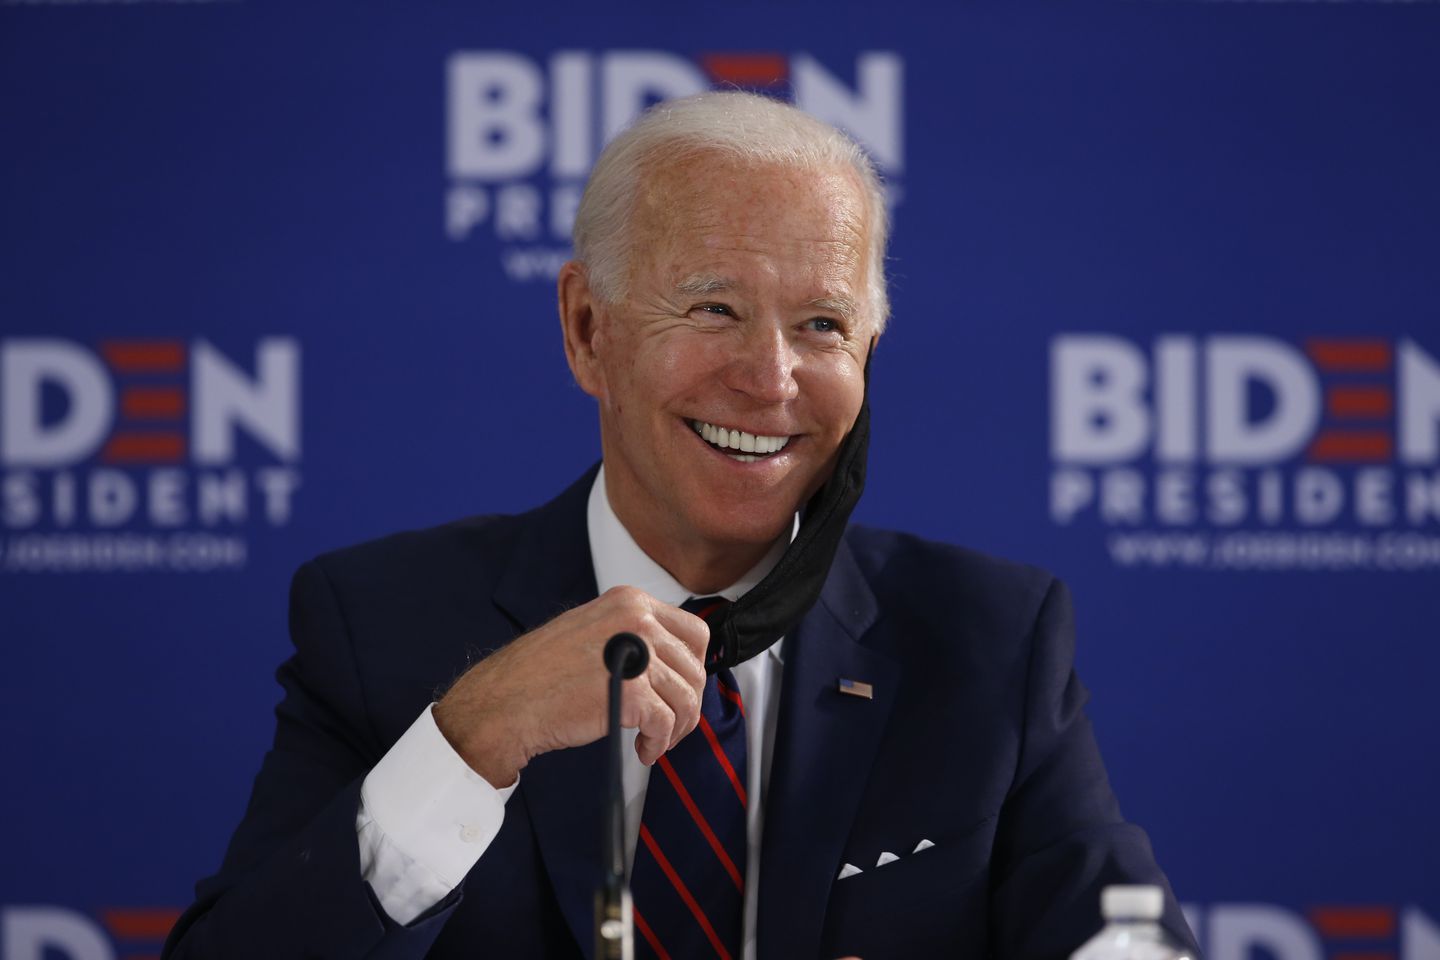 La 77 de ani, Joe Biden ar putea fi cel mai bătrân președinte al Statelor Unite ale Americii